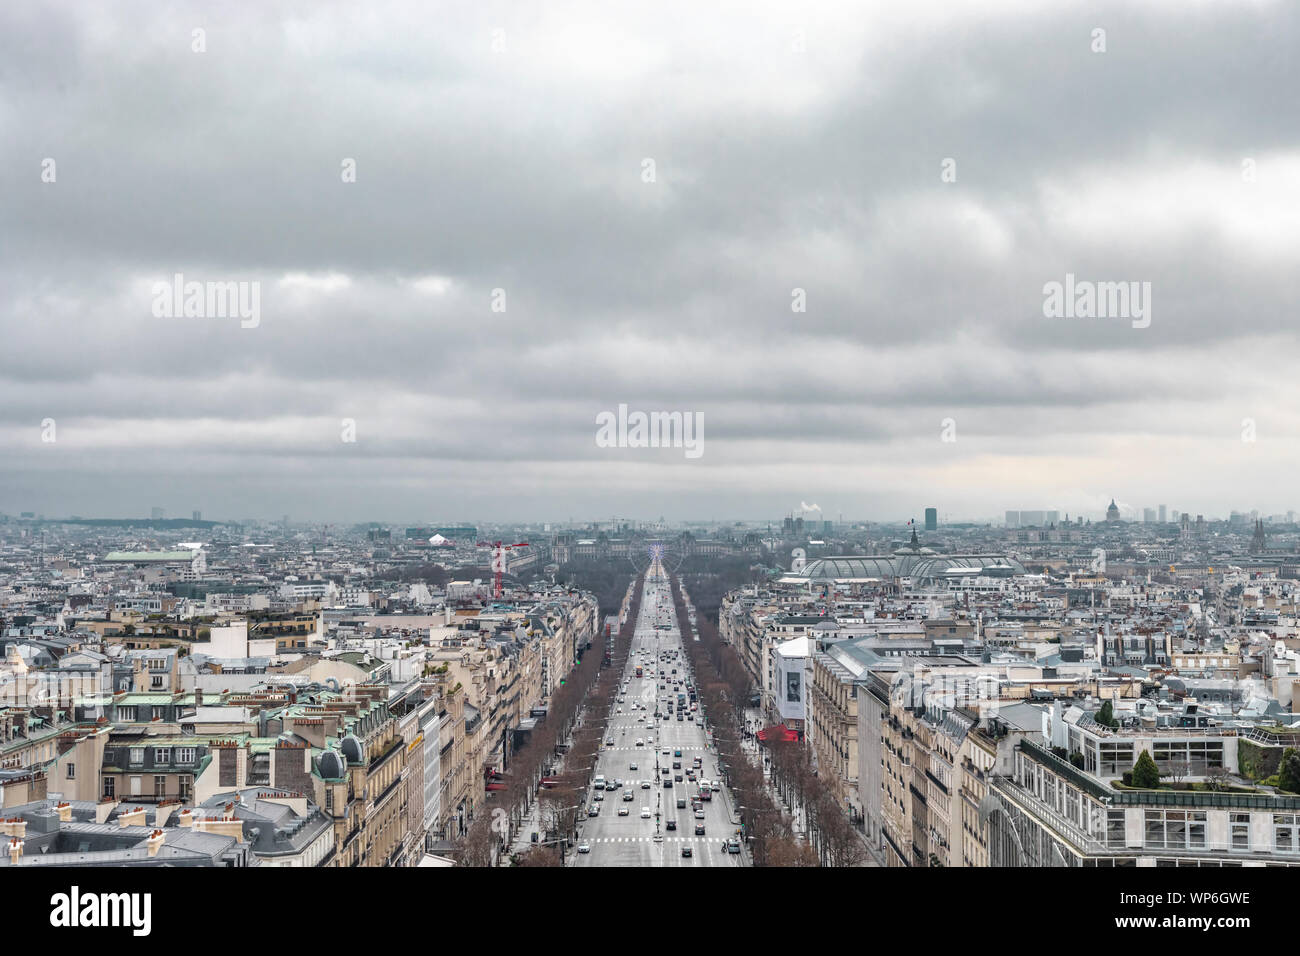 Paris, France - 28 janvier 2018 : paysage urbain haut de la rue Avenue des Champs-Elysees menant à la grande roue de Ferris sur un jour nuageux. Banque D'Images